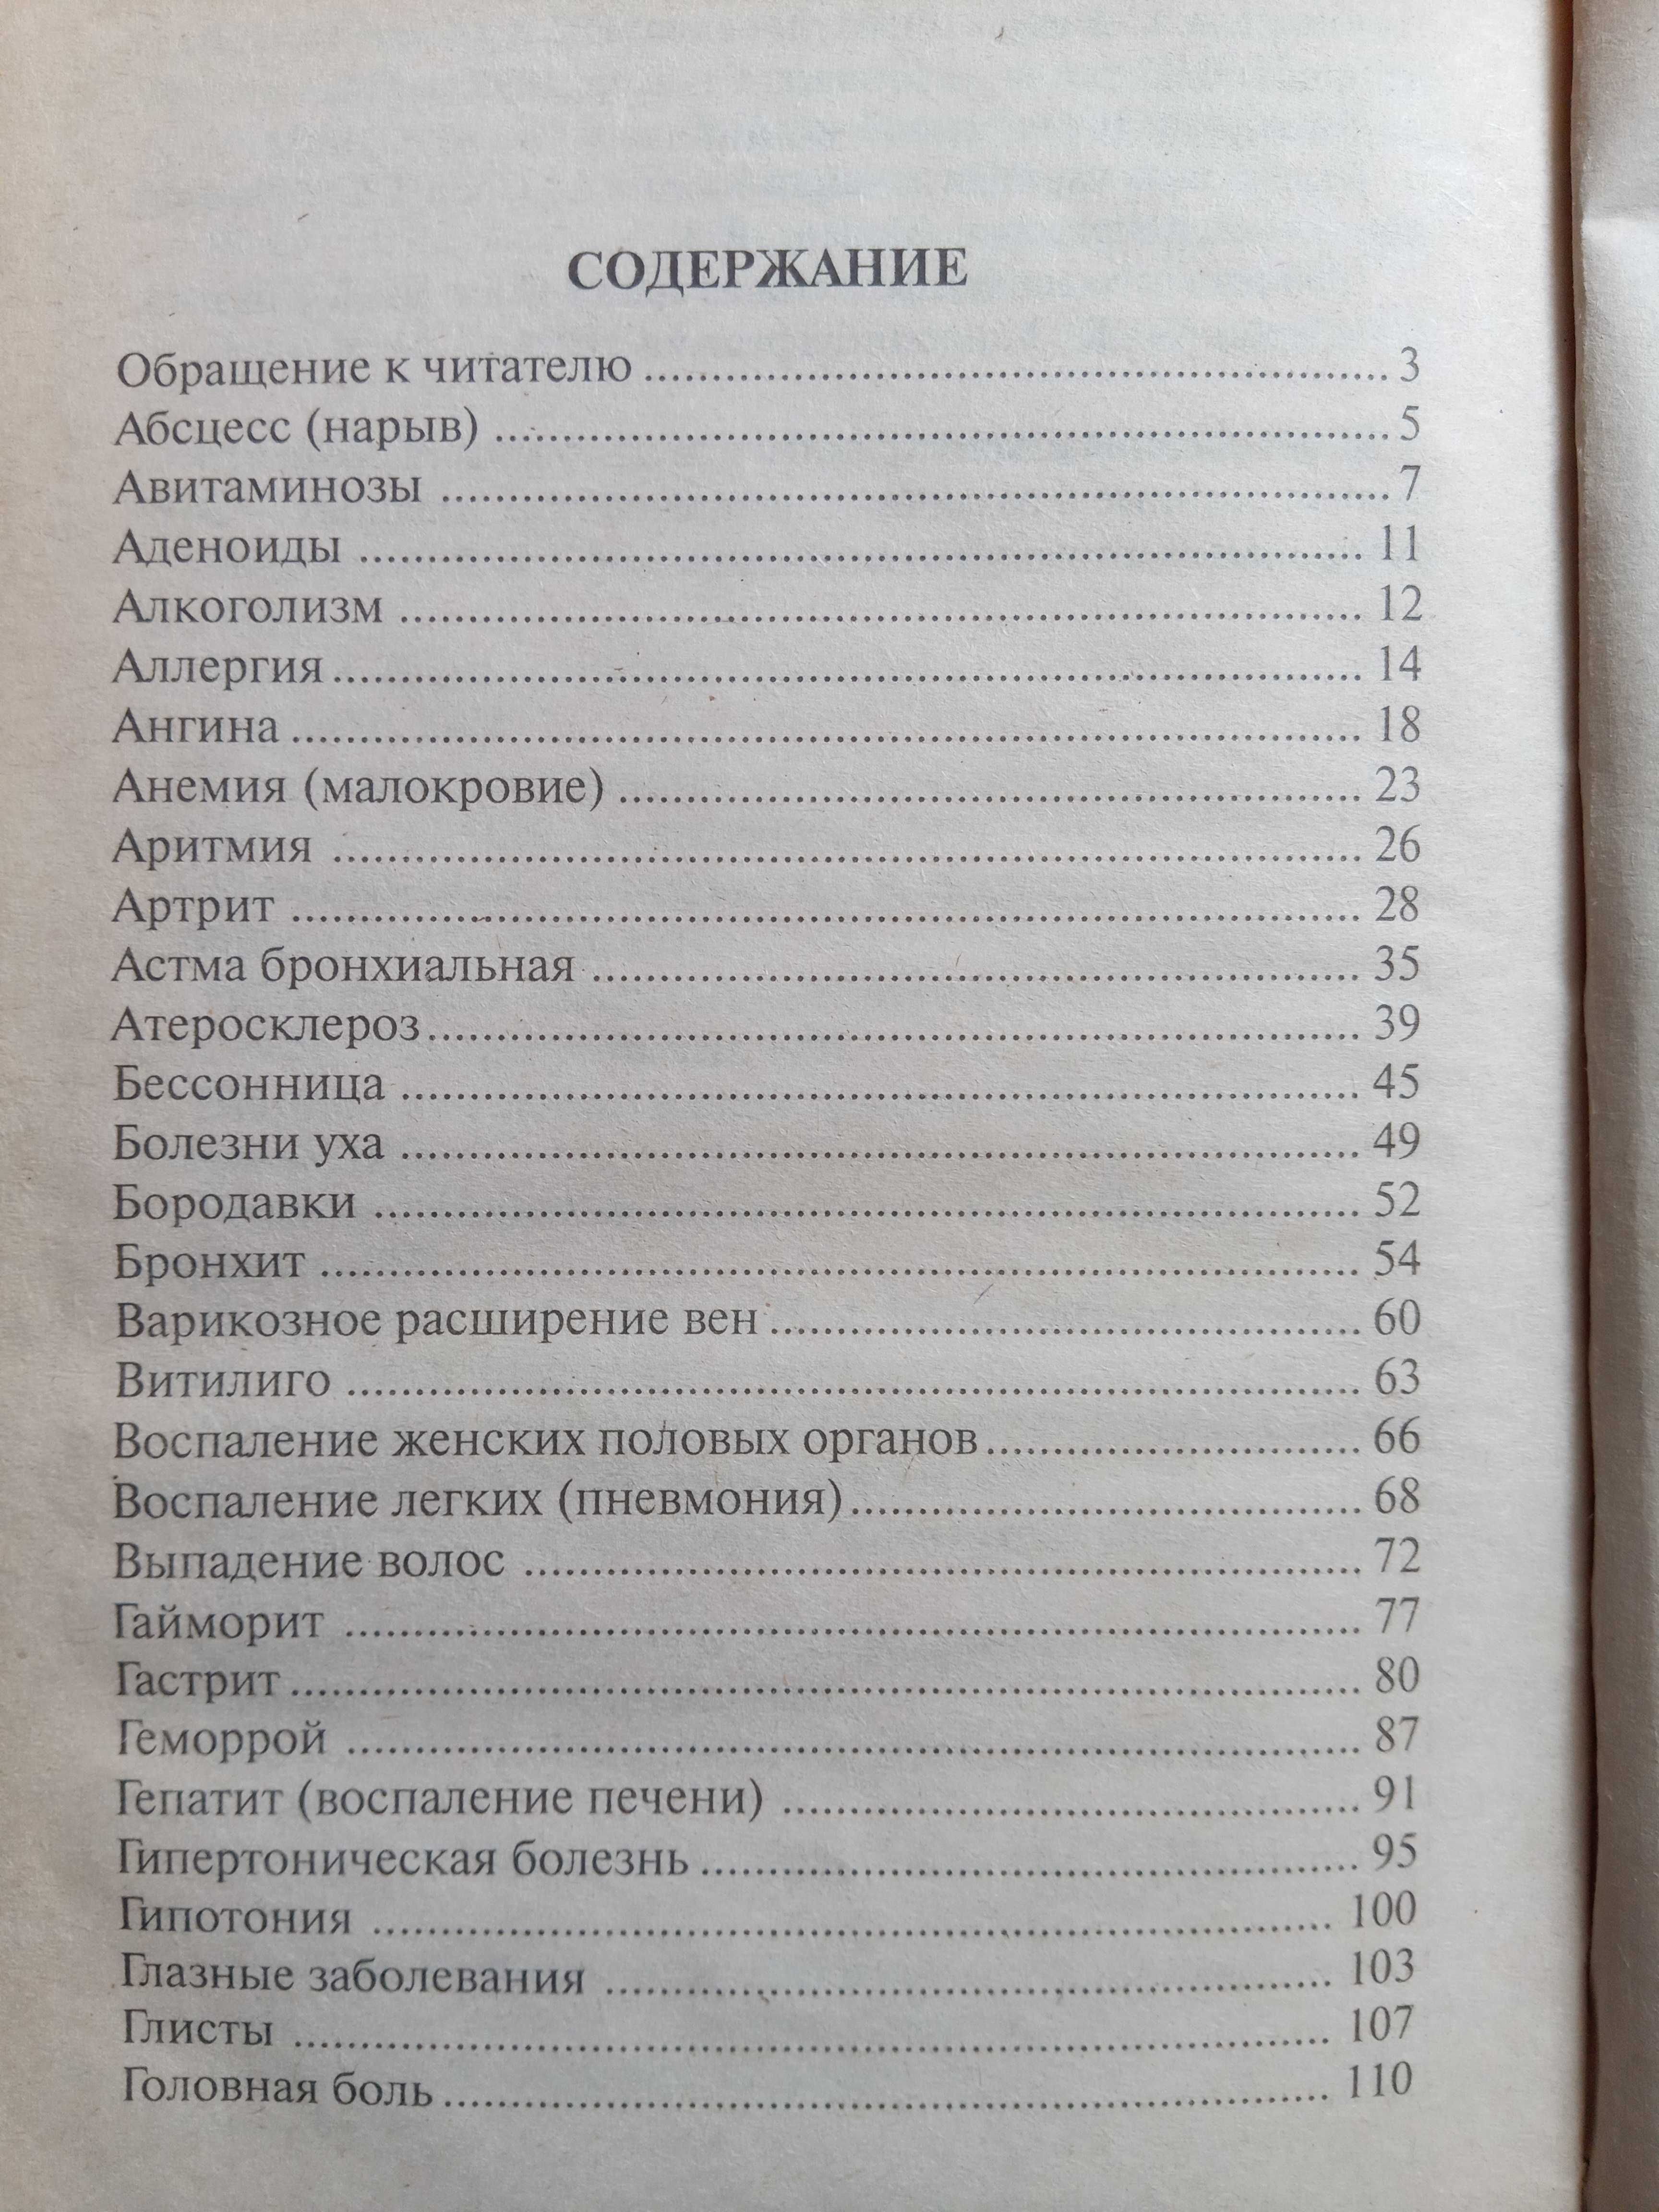 Большой справочник народной медицины 2000 рецептов (книга)